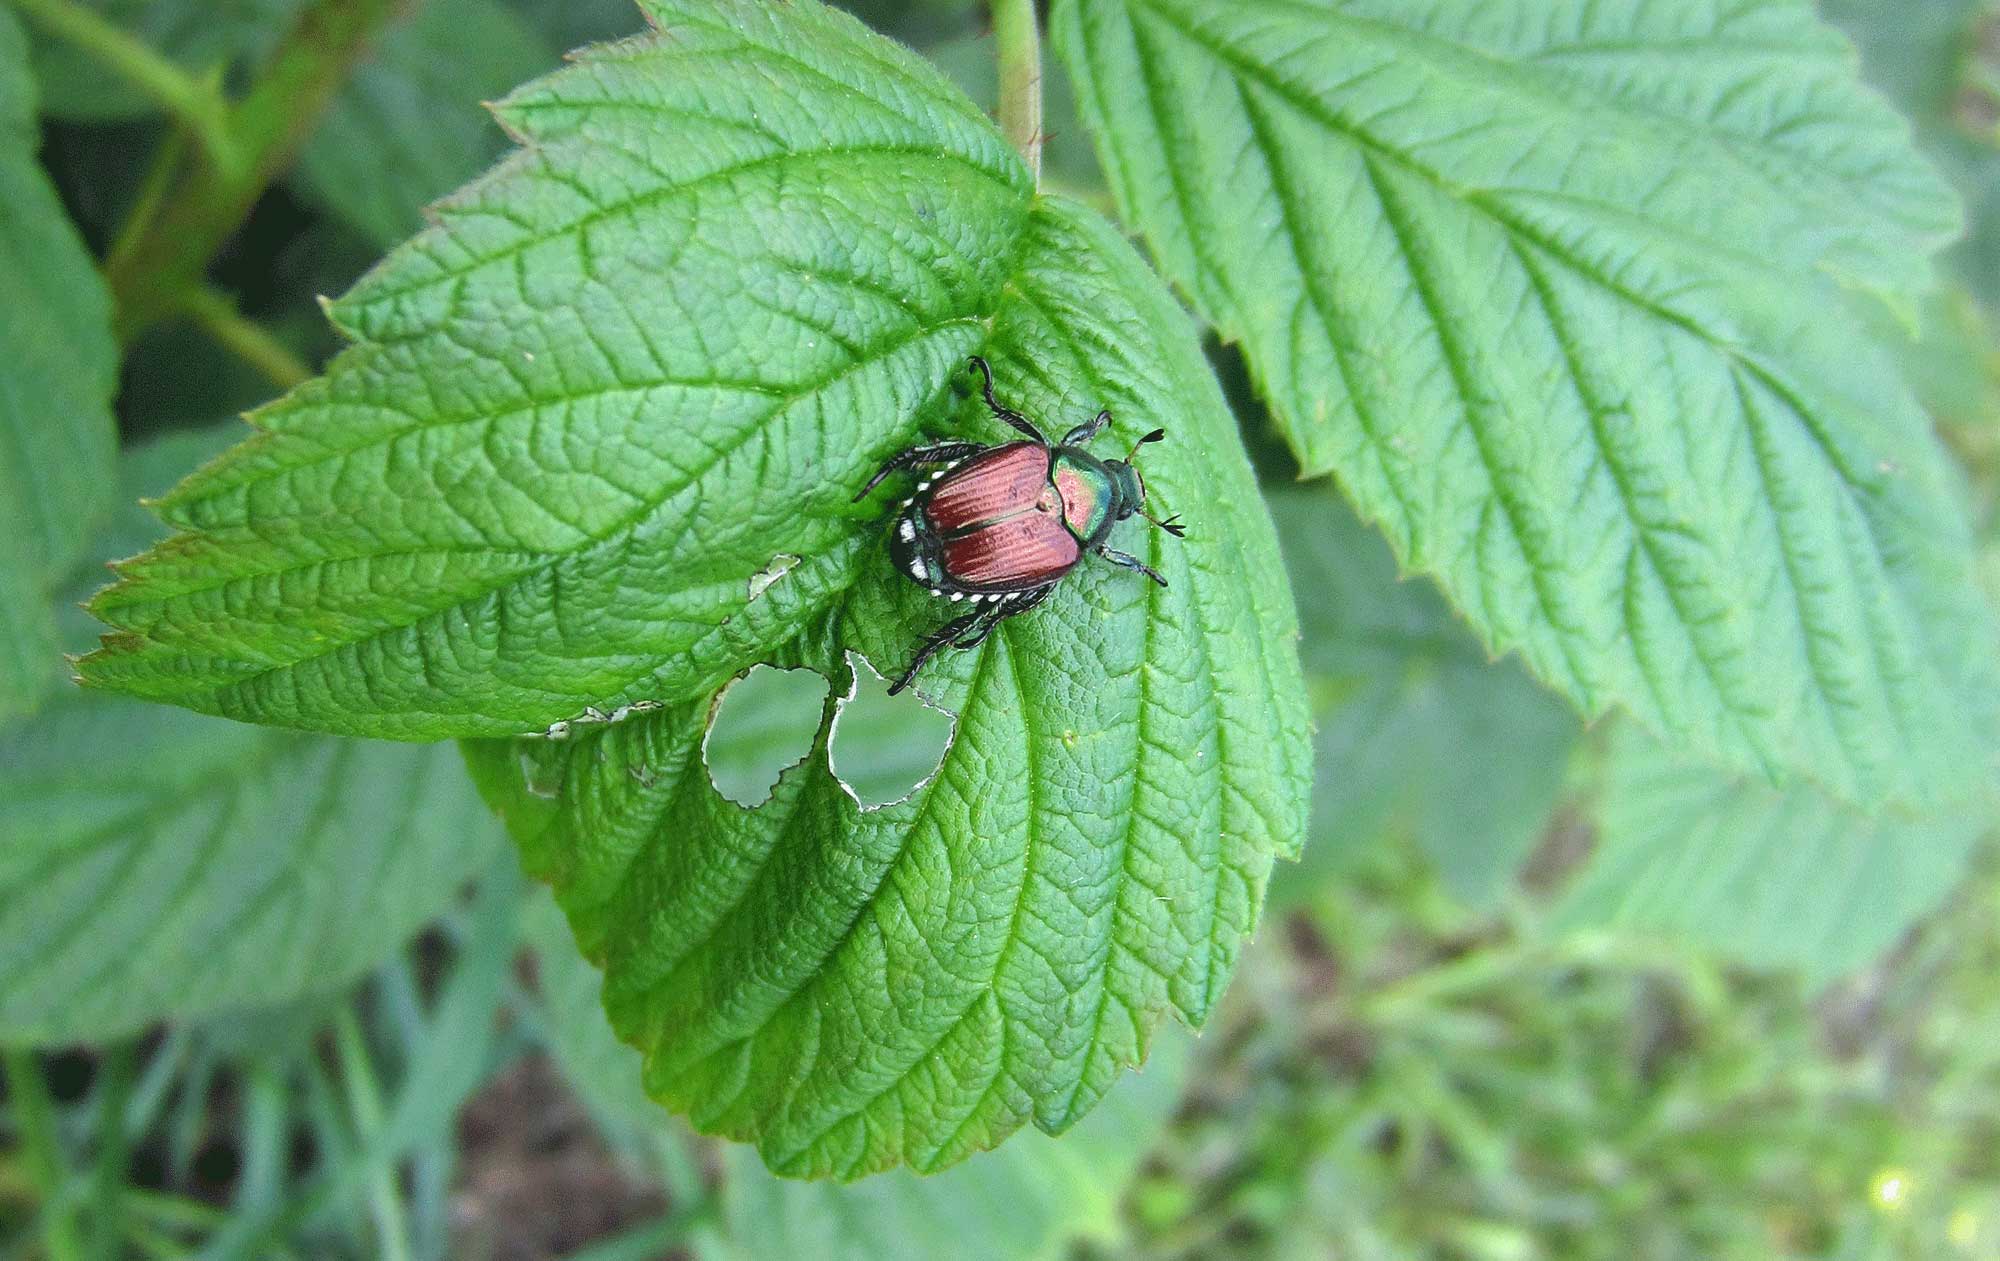 Japanese Beetle on a leaf.